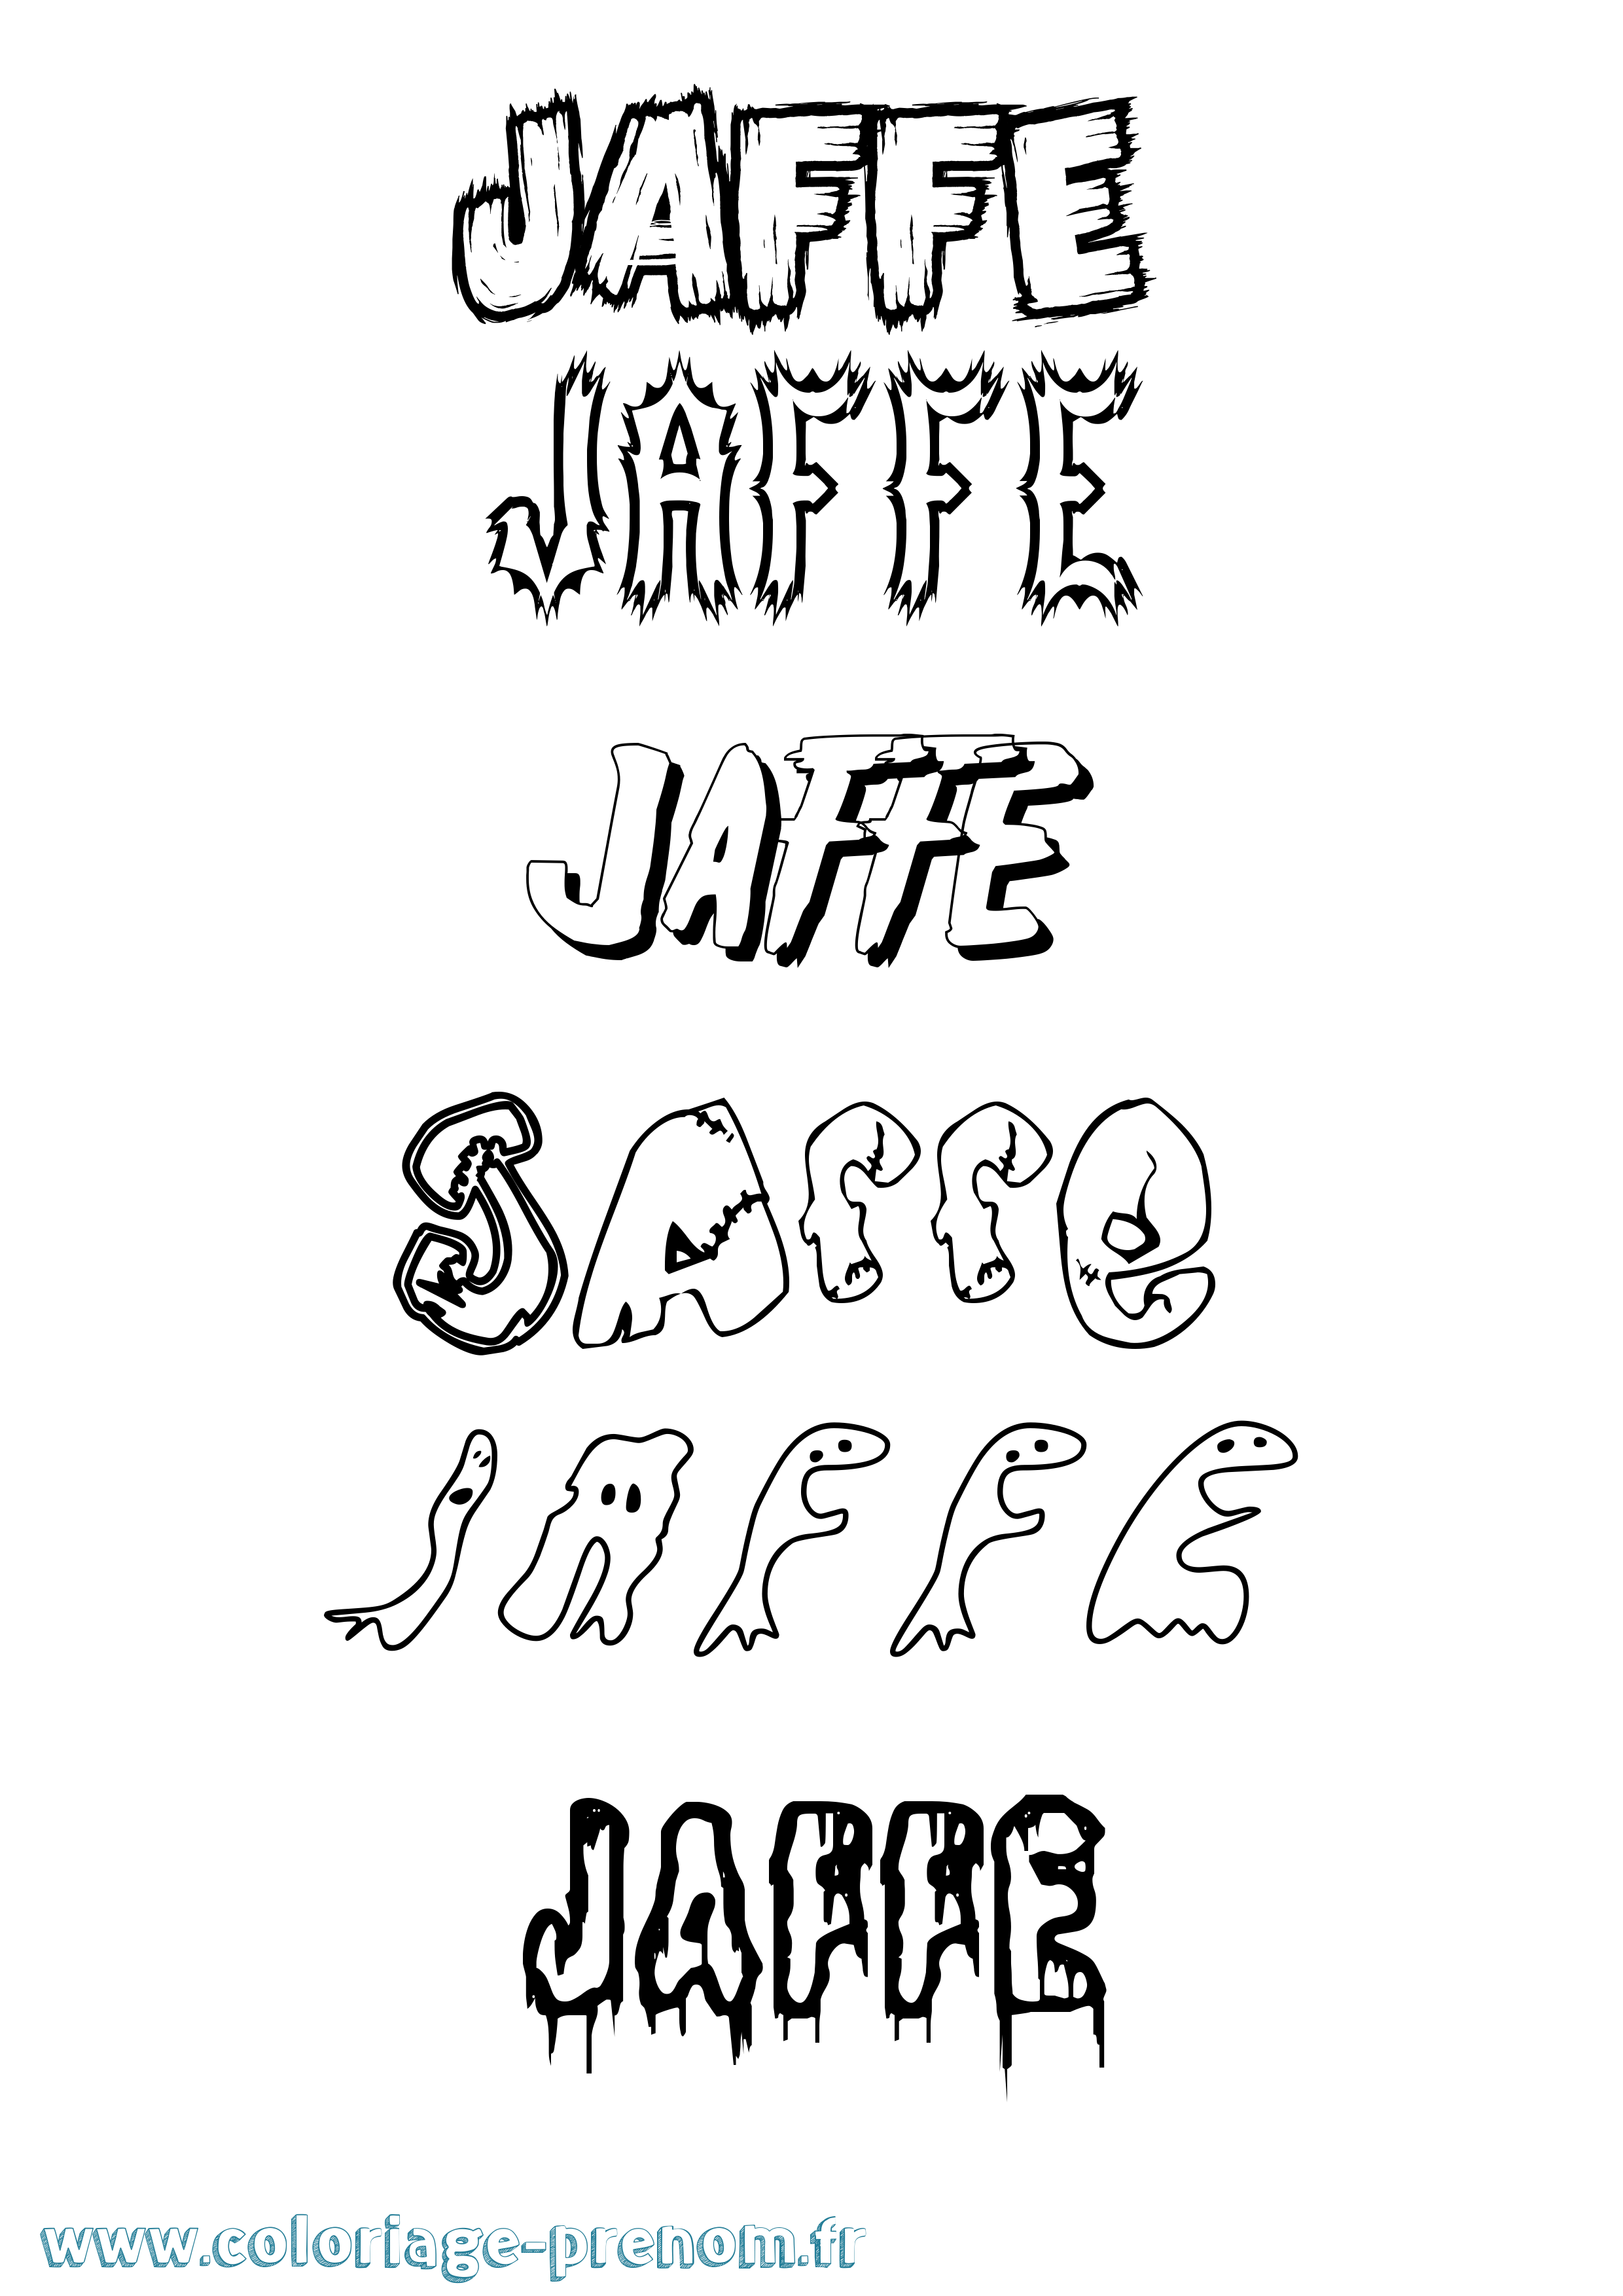 Coloriage prénom Jaffe Frisson